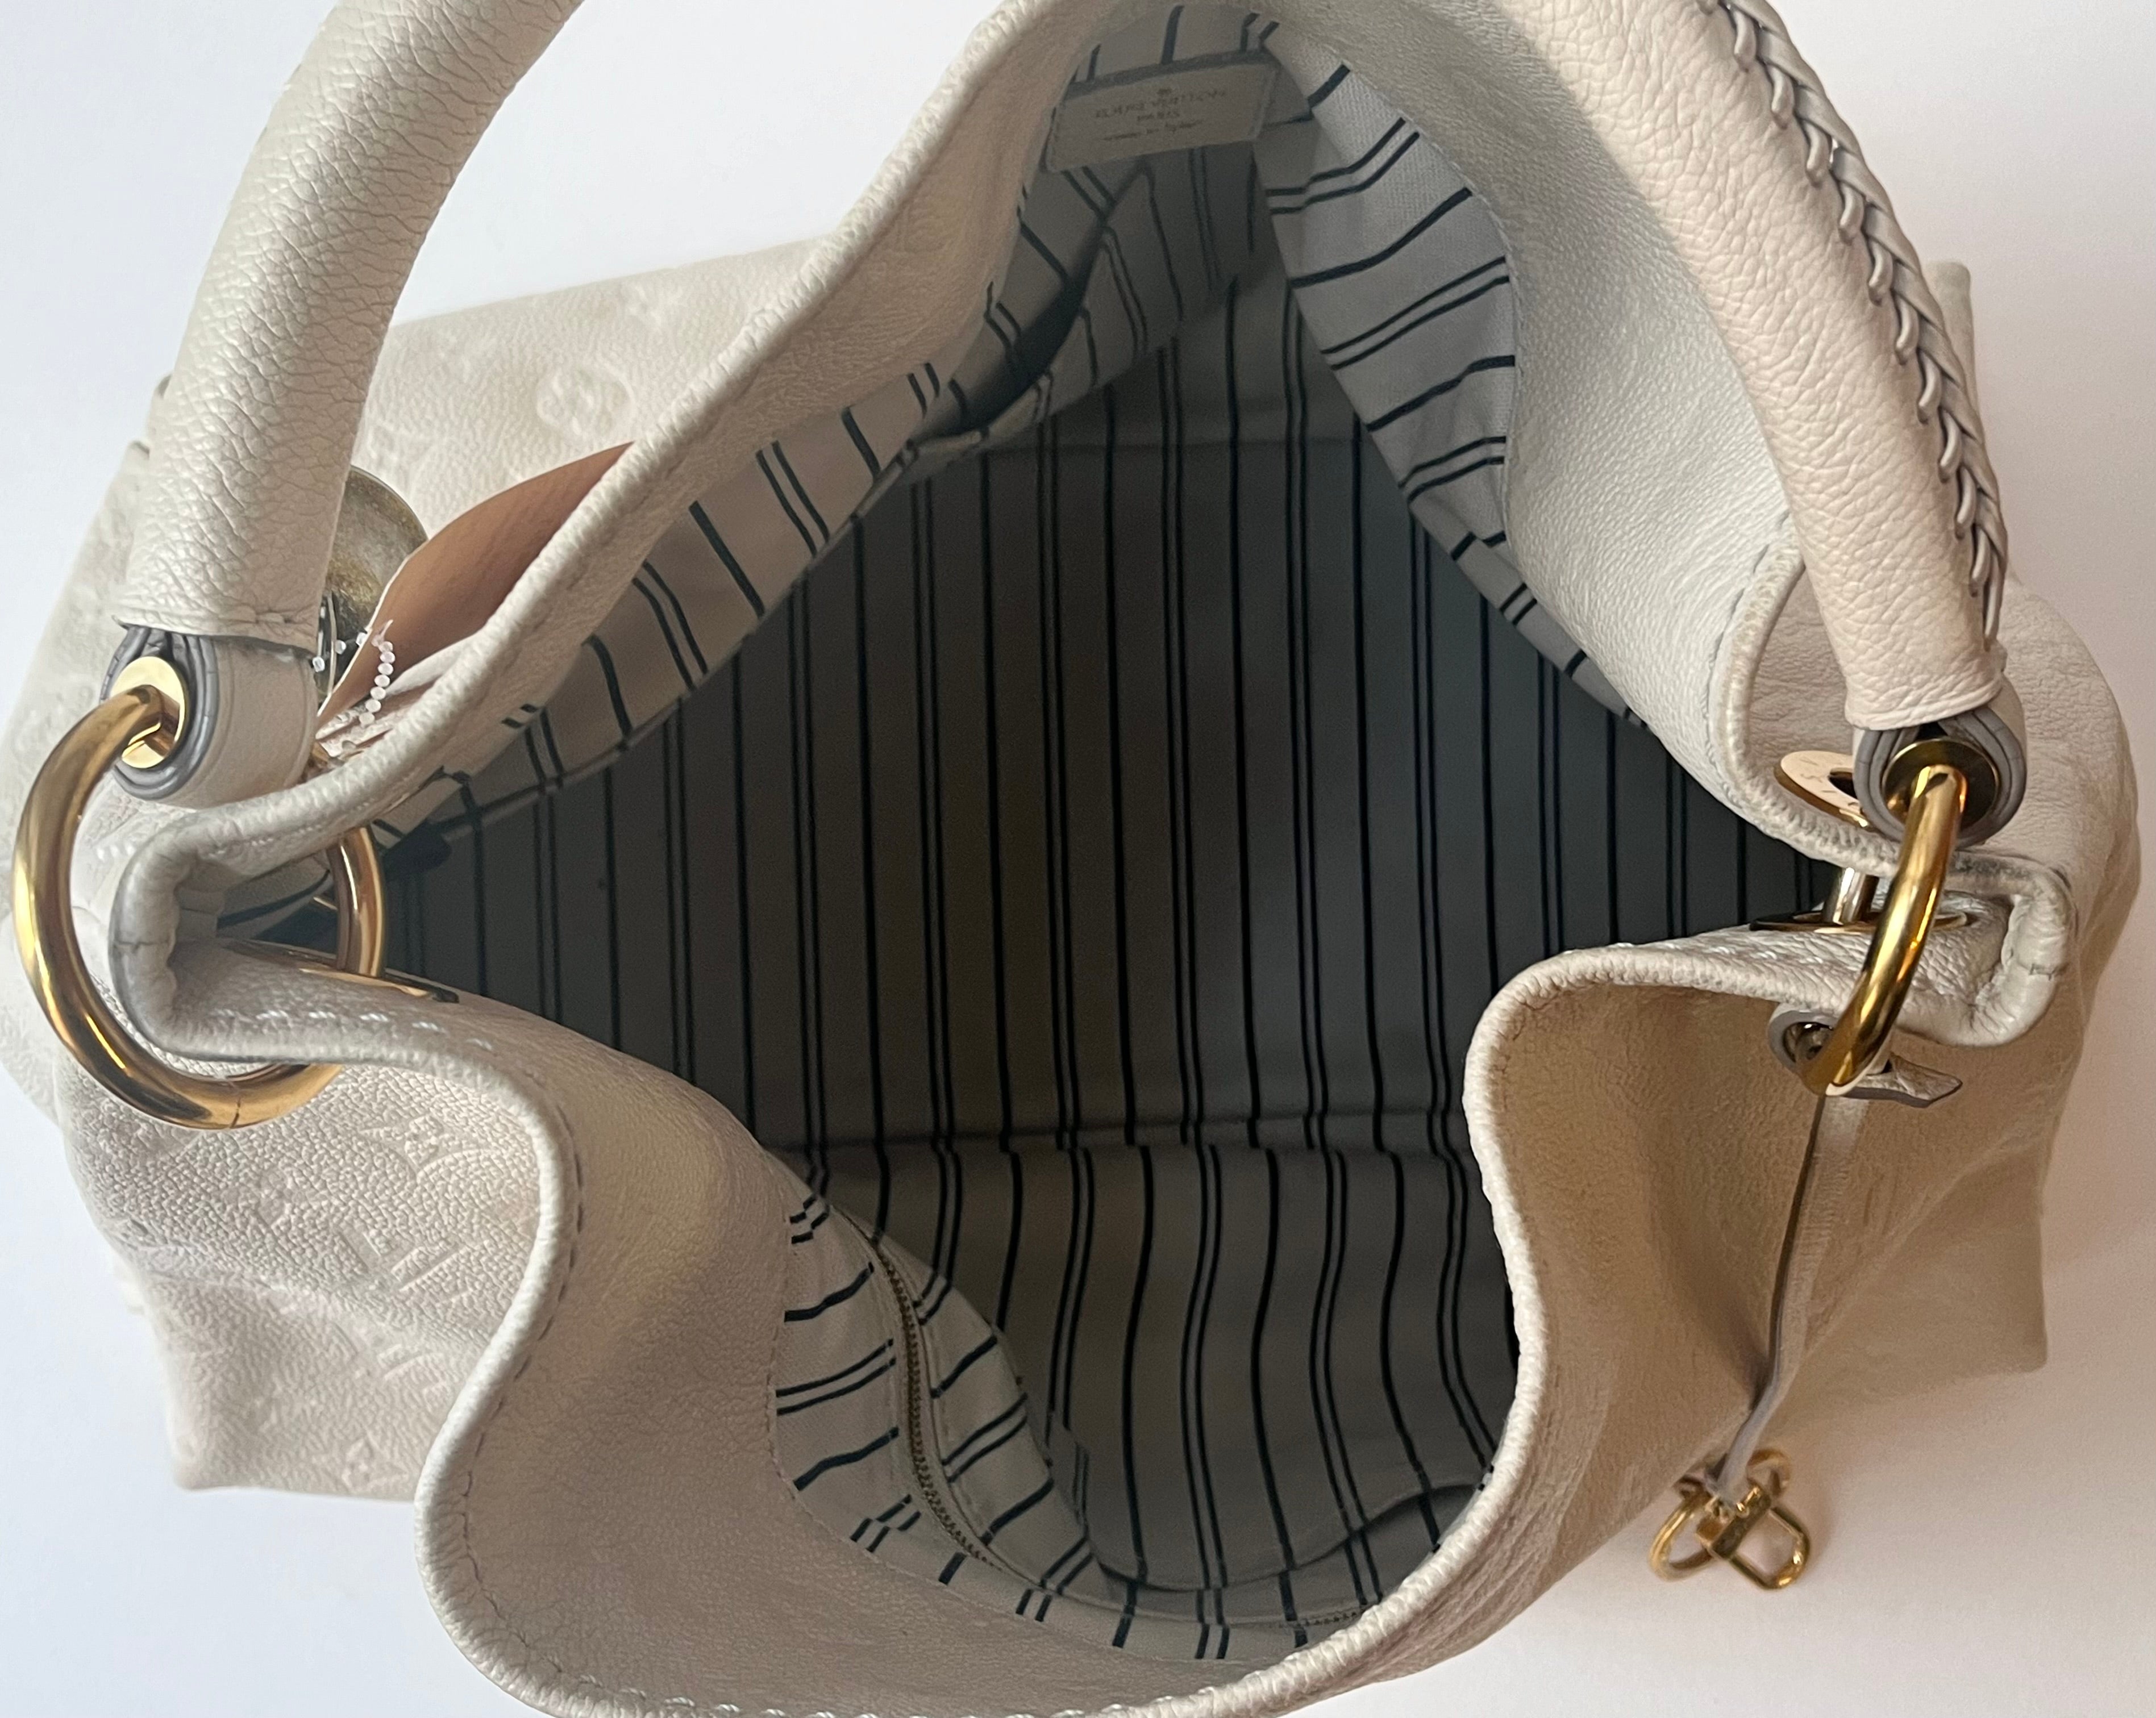 Pre-Owned Louis Vuitton Cream Artsy Monogram Satchel Handbag